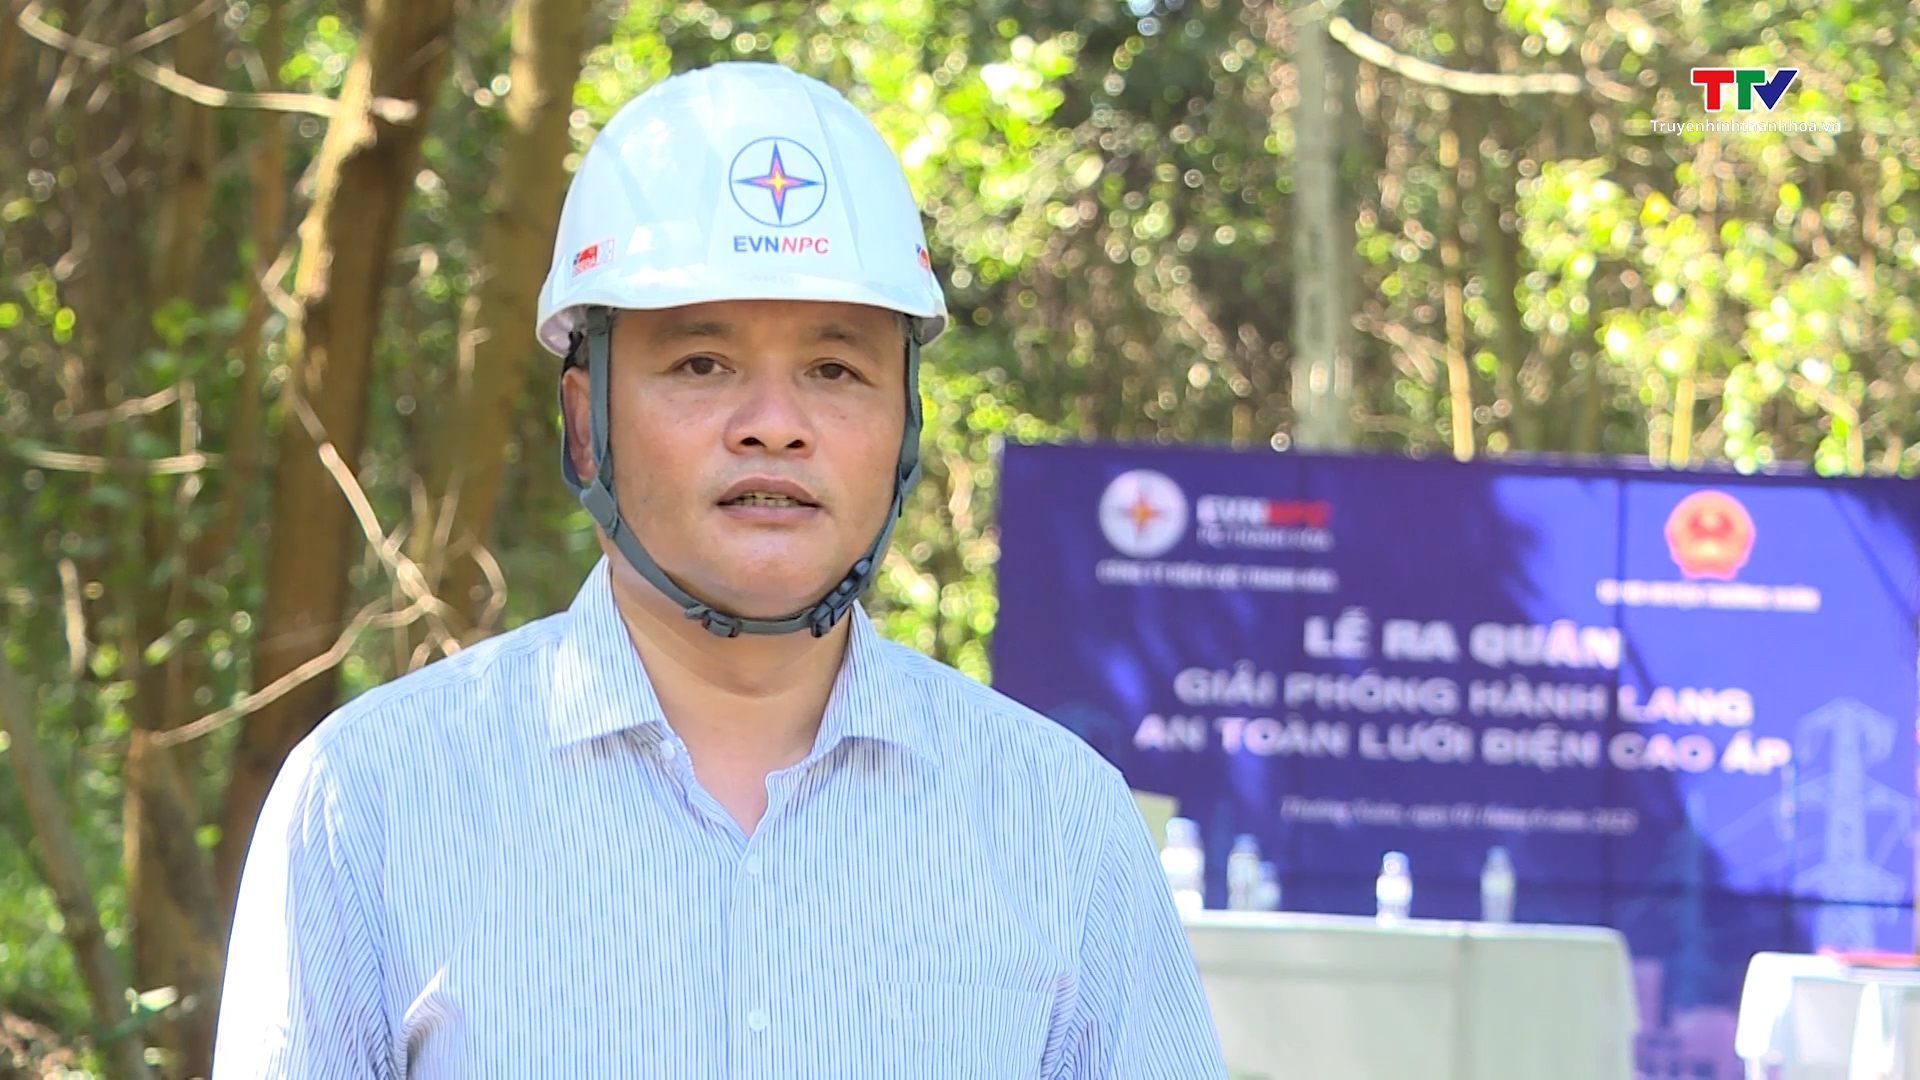 Ra quân giải phóng hành lang an toàn lưới điện tại huyện Thường Xuân - Ảnh 3.